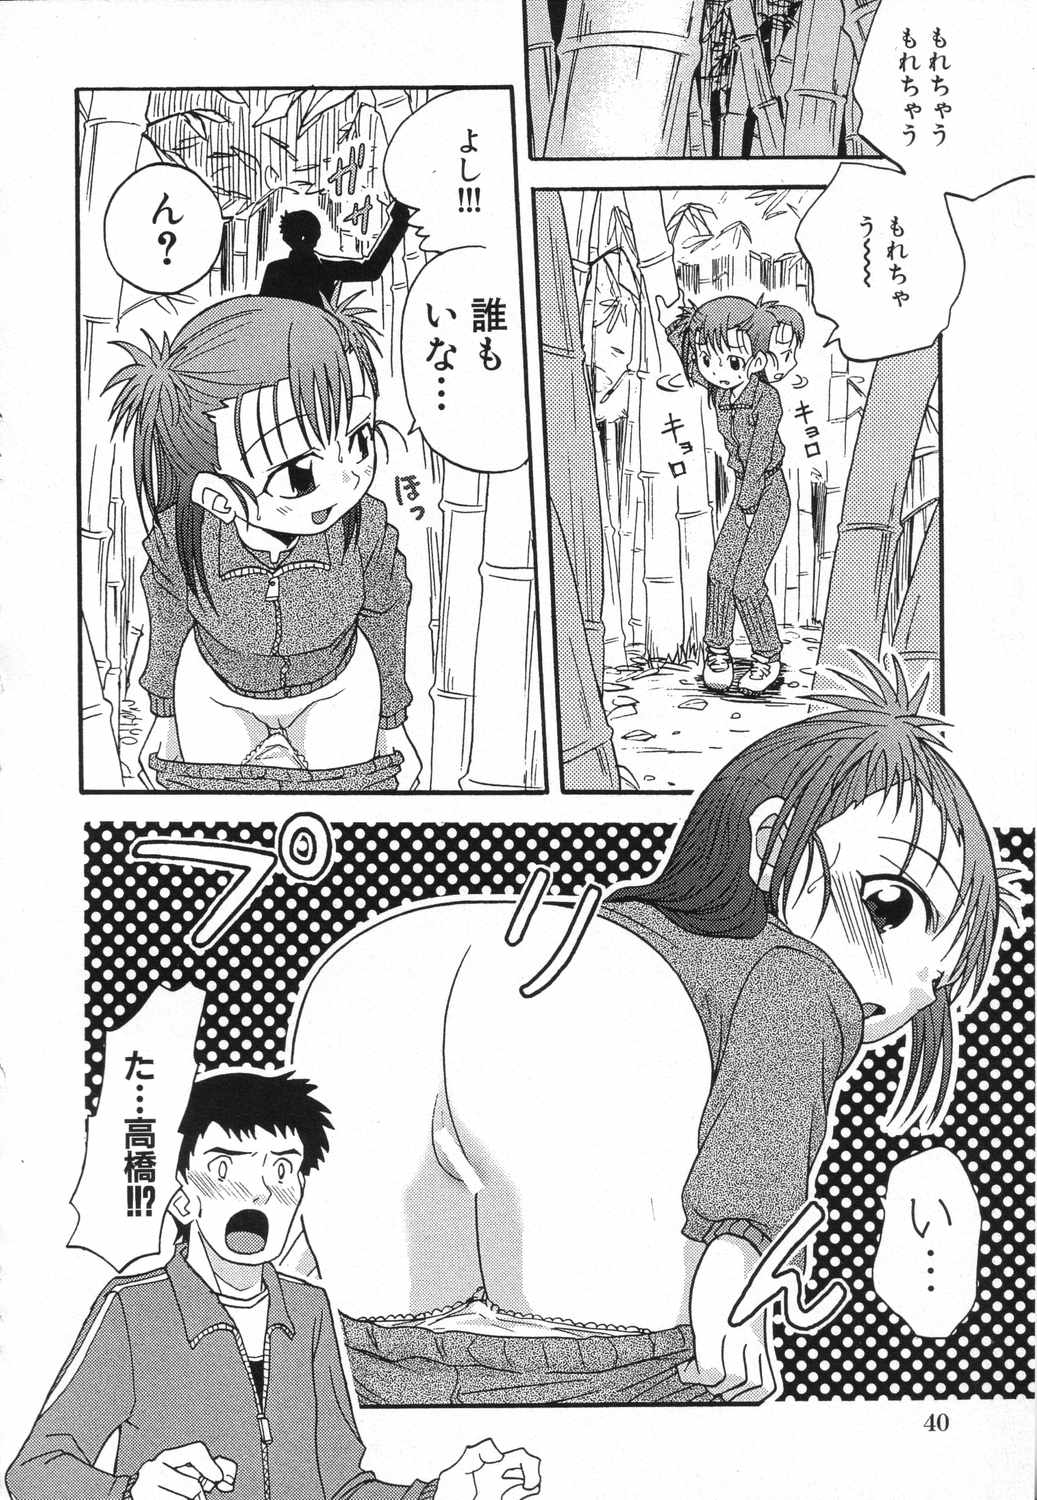 [Anthology] LOCO vol.5 Aki no Omorashi Musume Tokushuu page 43 full